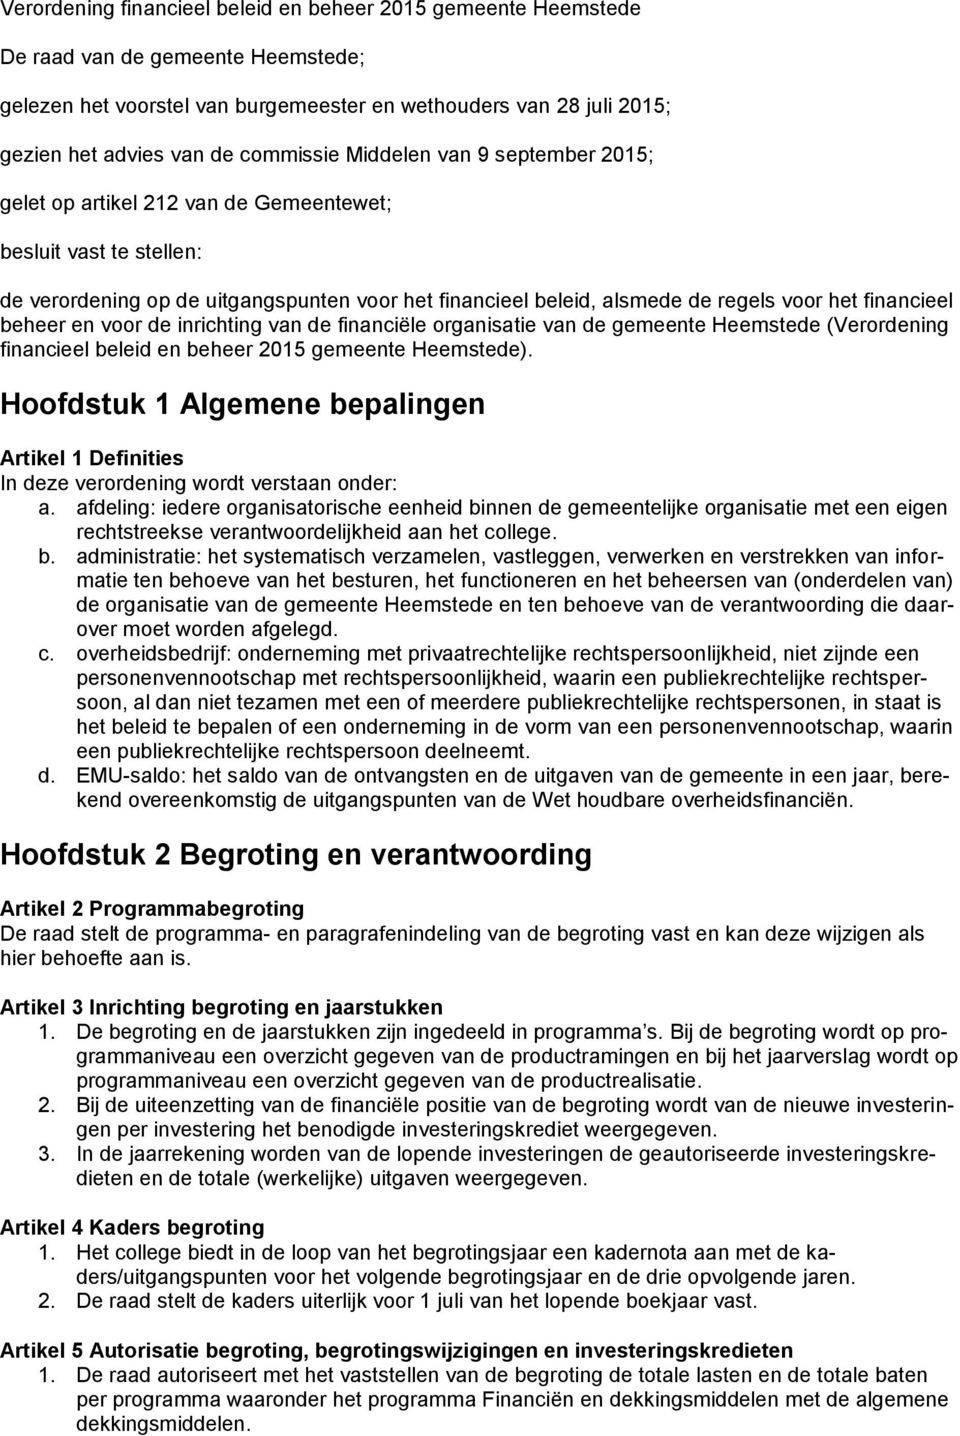 financieel beheer en voor de inrichting van de financiële organisatie van de gemeente Heemstede (Verordening financieel beleid en beheer 2015 gemeente Heemstede).